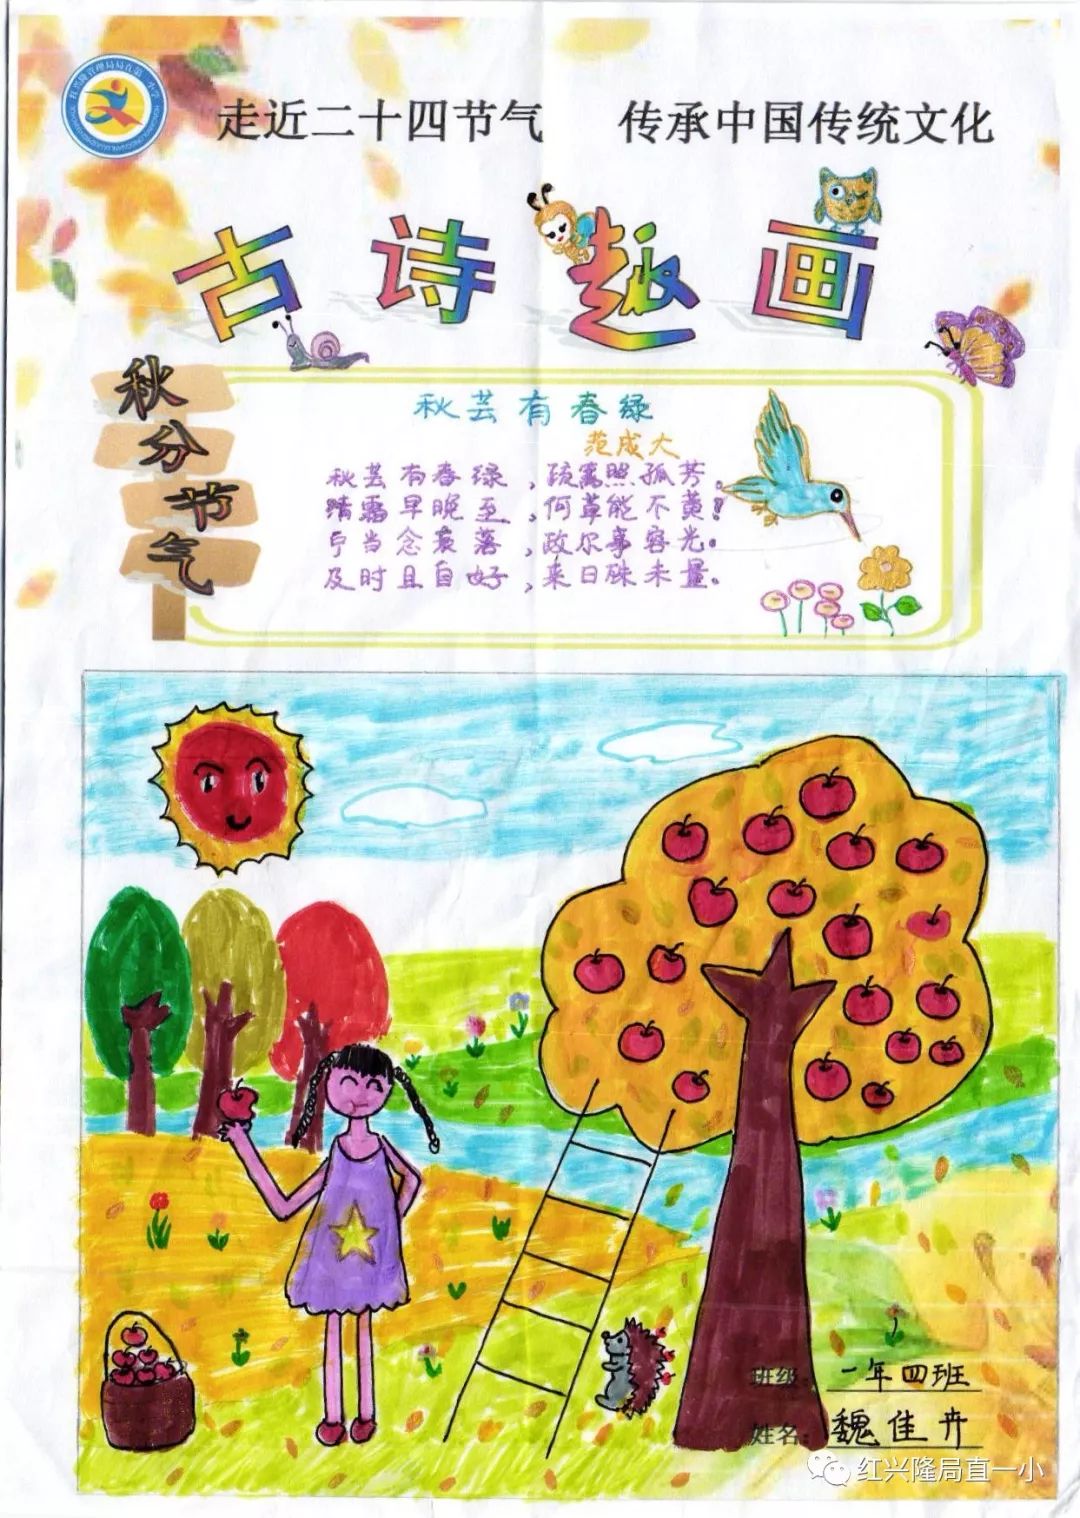 一年级的宝宝们绘制诗配画,让浓浓的诗情变成生动鲜活的画面.